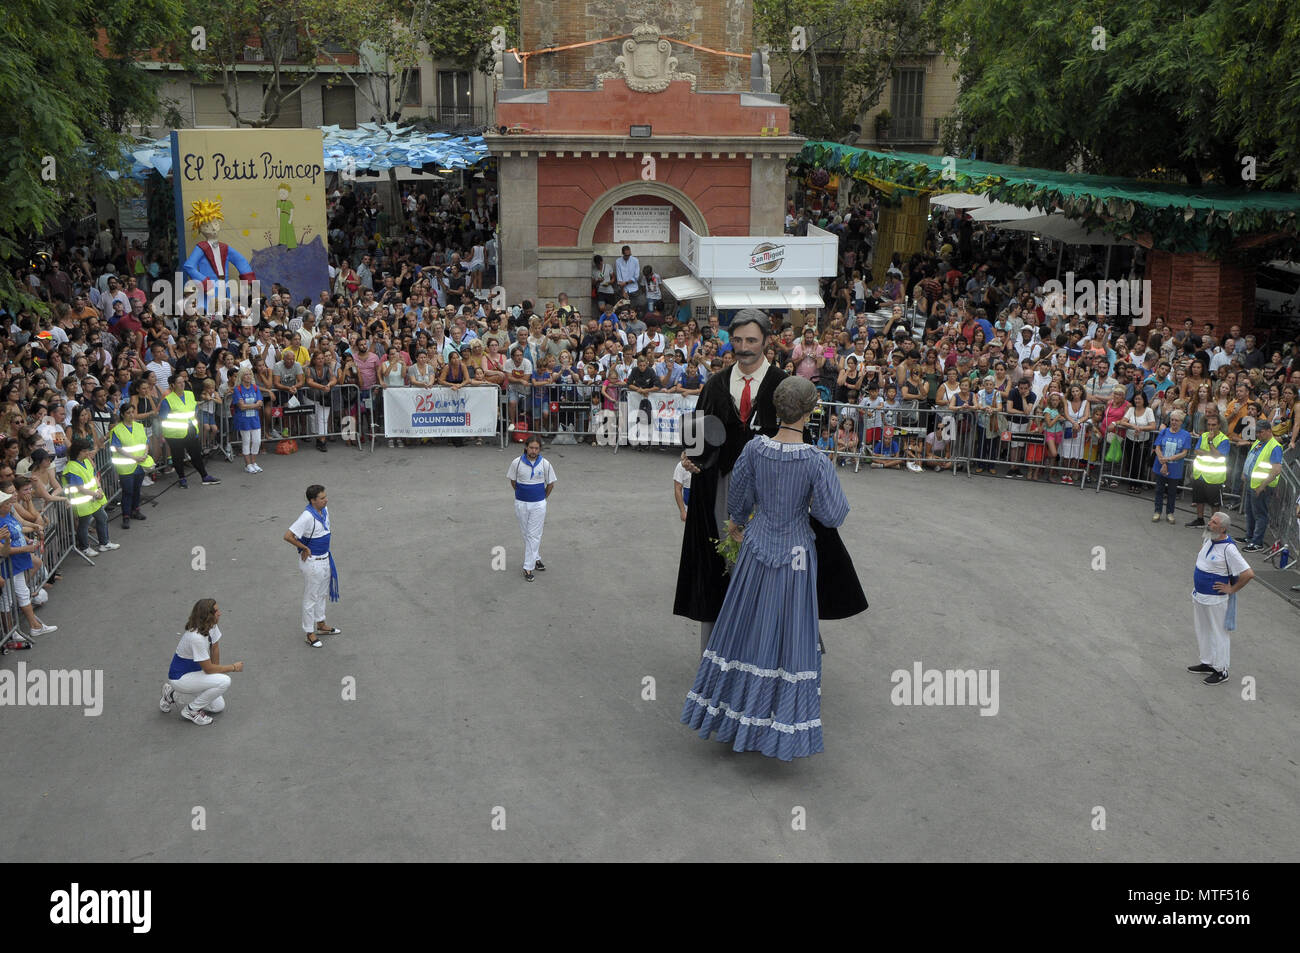 Traditionelle RIESEN TANZ WÄHREND GRACIA SOMMER FESTIVAL IN BARCELONA, die Leute, die die verschiedenen Straßen Barcelonas. Foto: Rosmi Stockfoto